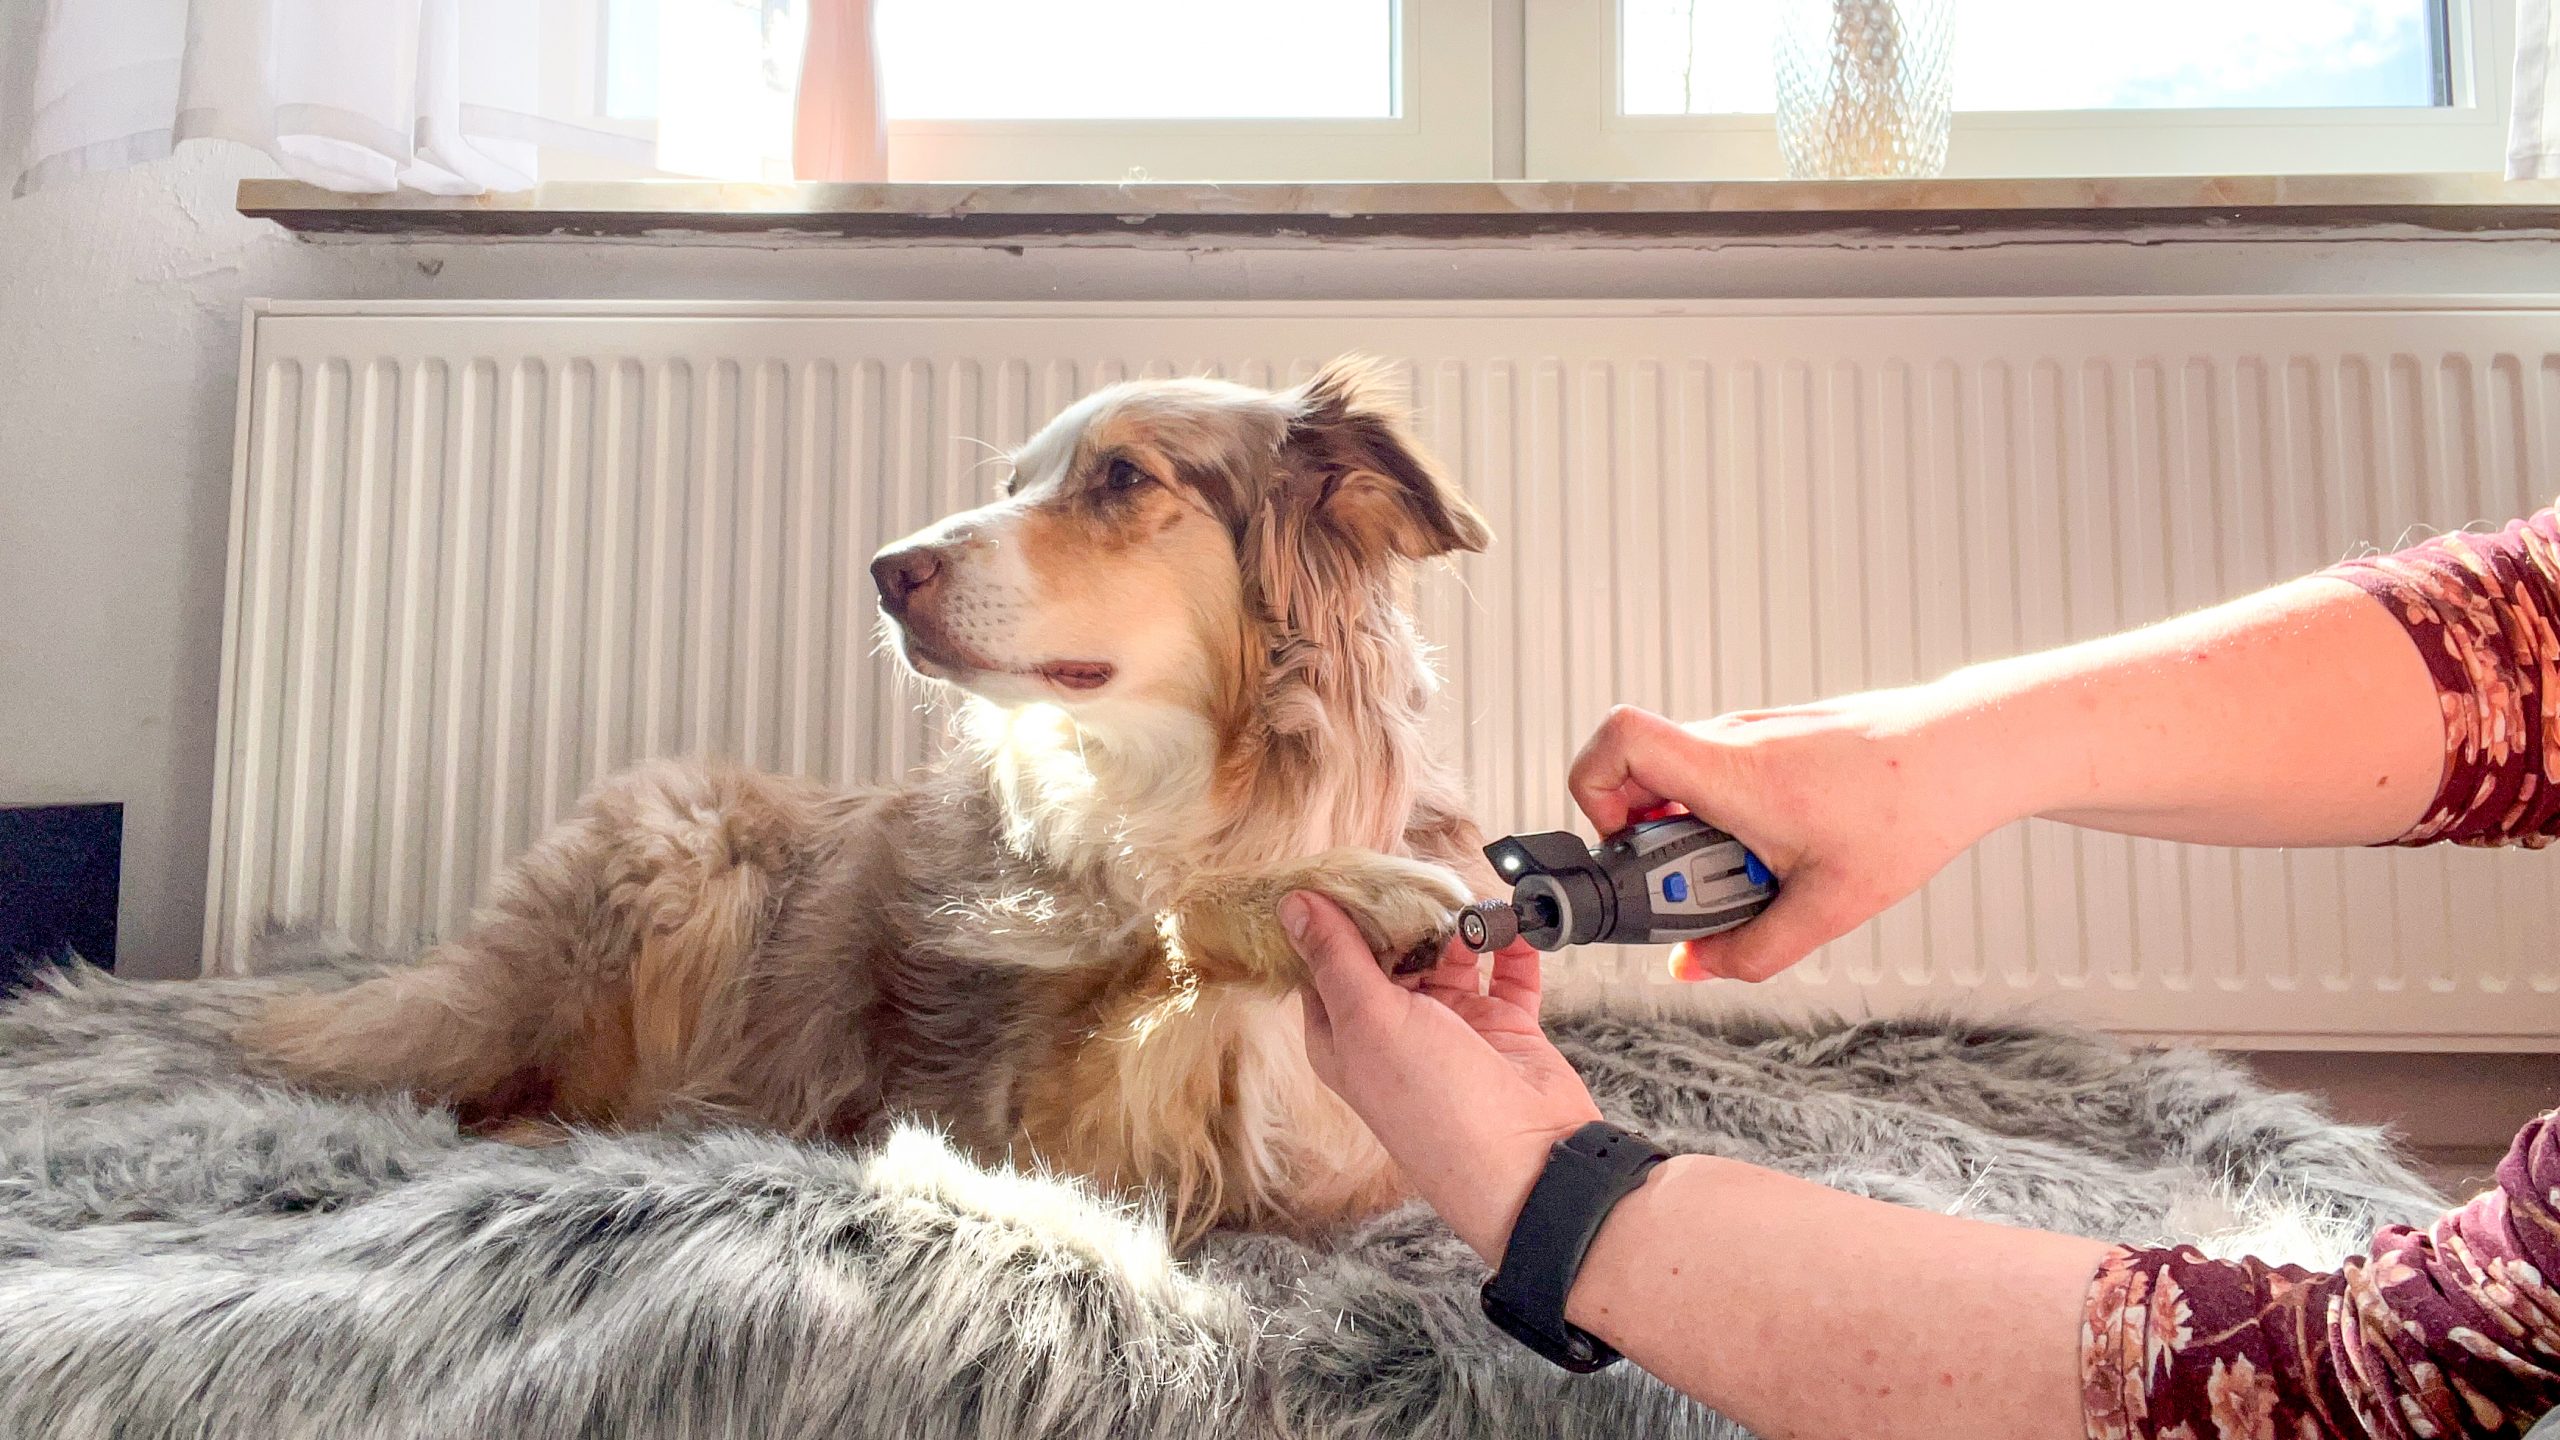 Krallen schneiden beim Hund – so wird es gemacht